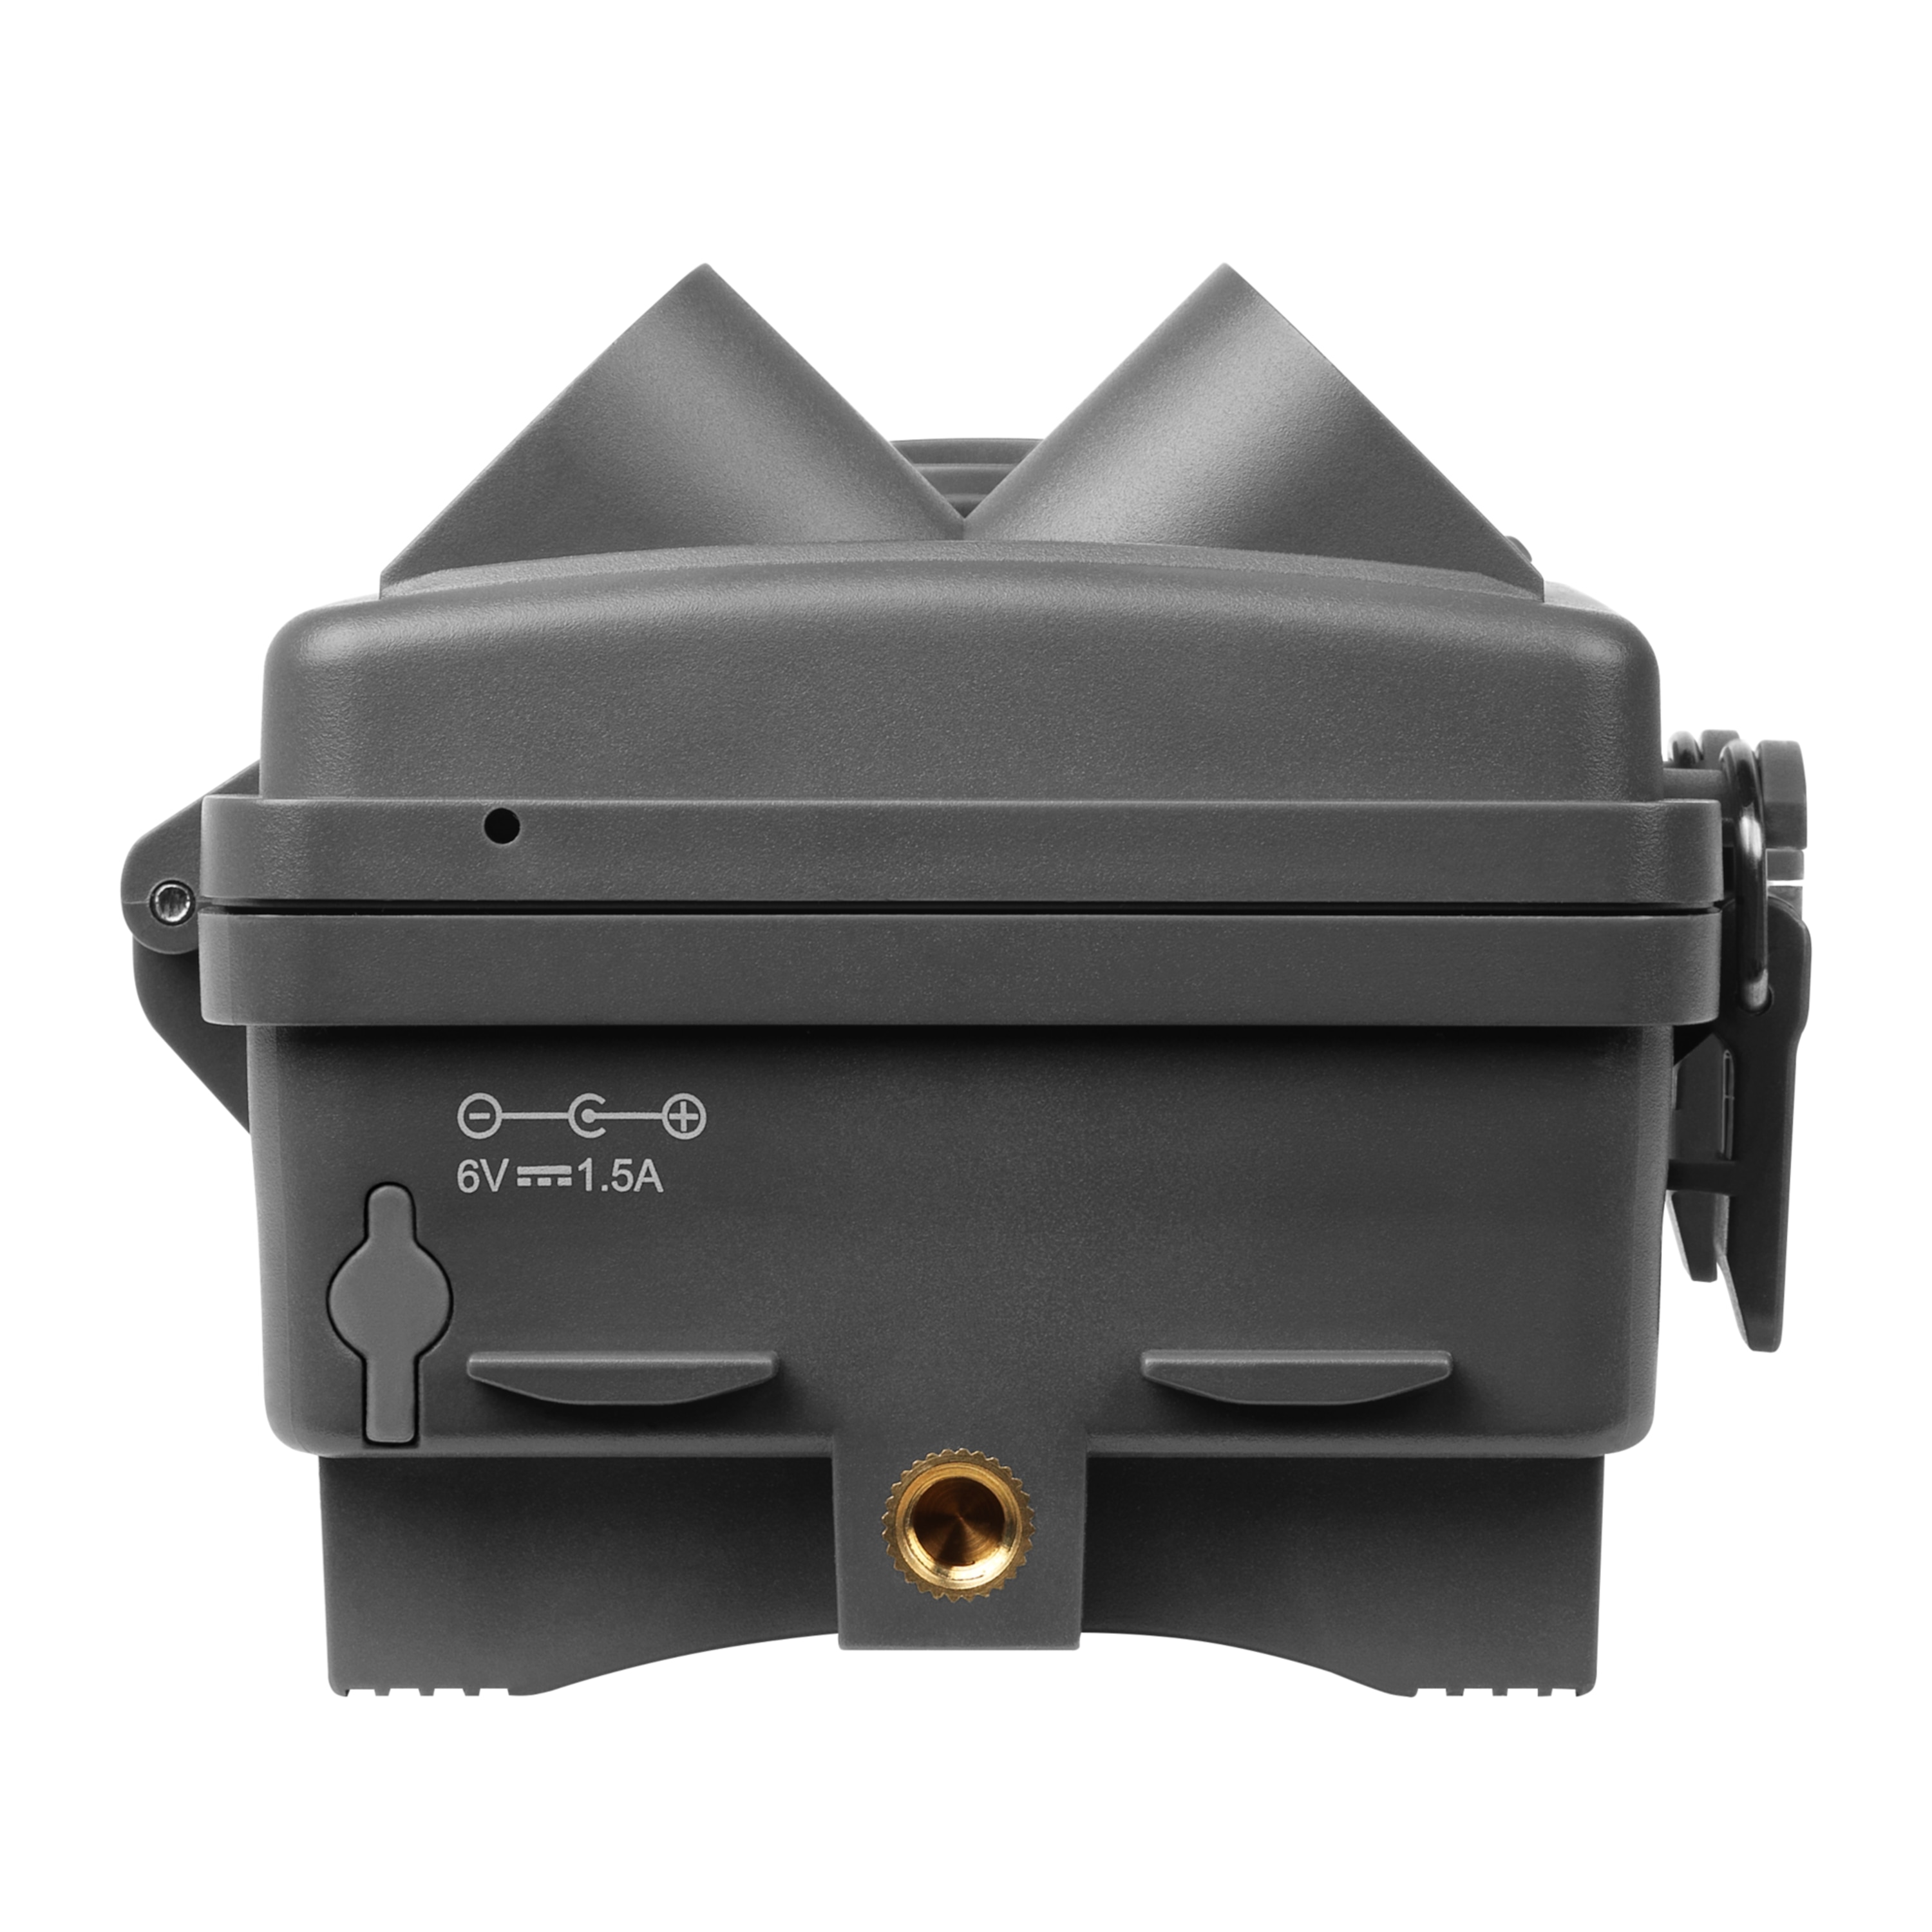 MEDION® S47044 Wildkamera mit getarntem Gehäuse, 6,1 cm (2,4") TFT-Display, 5 MP CMOS Sensor, spritzwassergeschützt, Bewegungsmelder